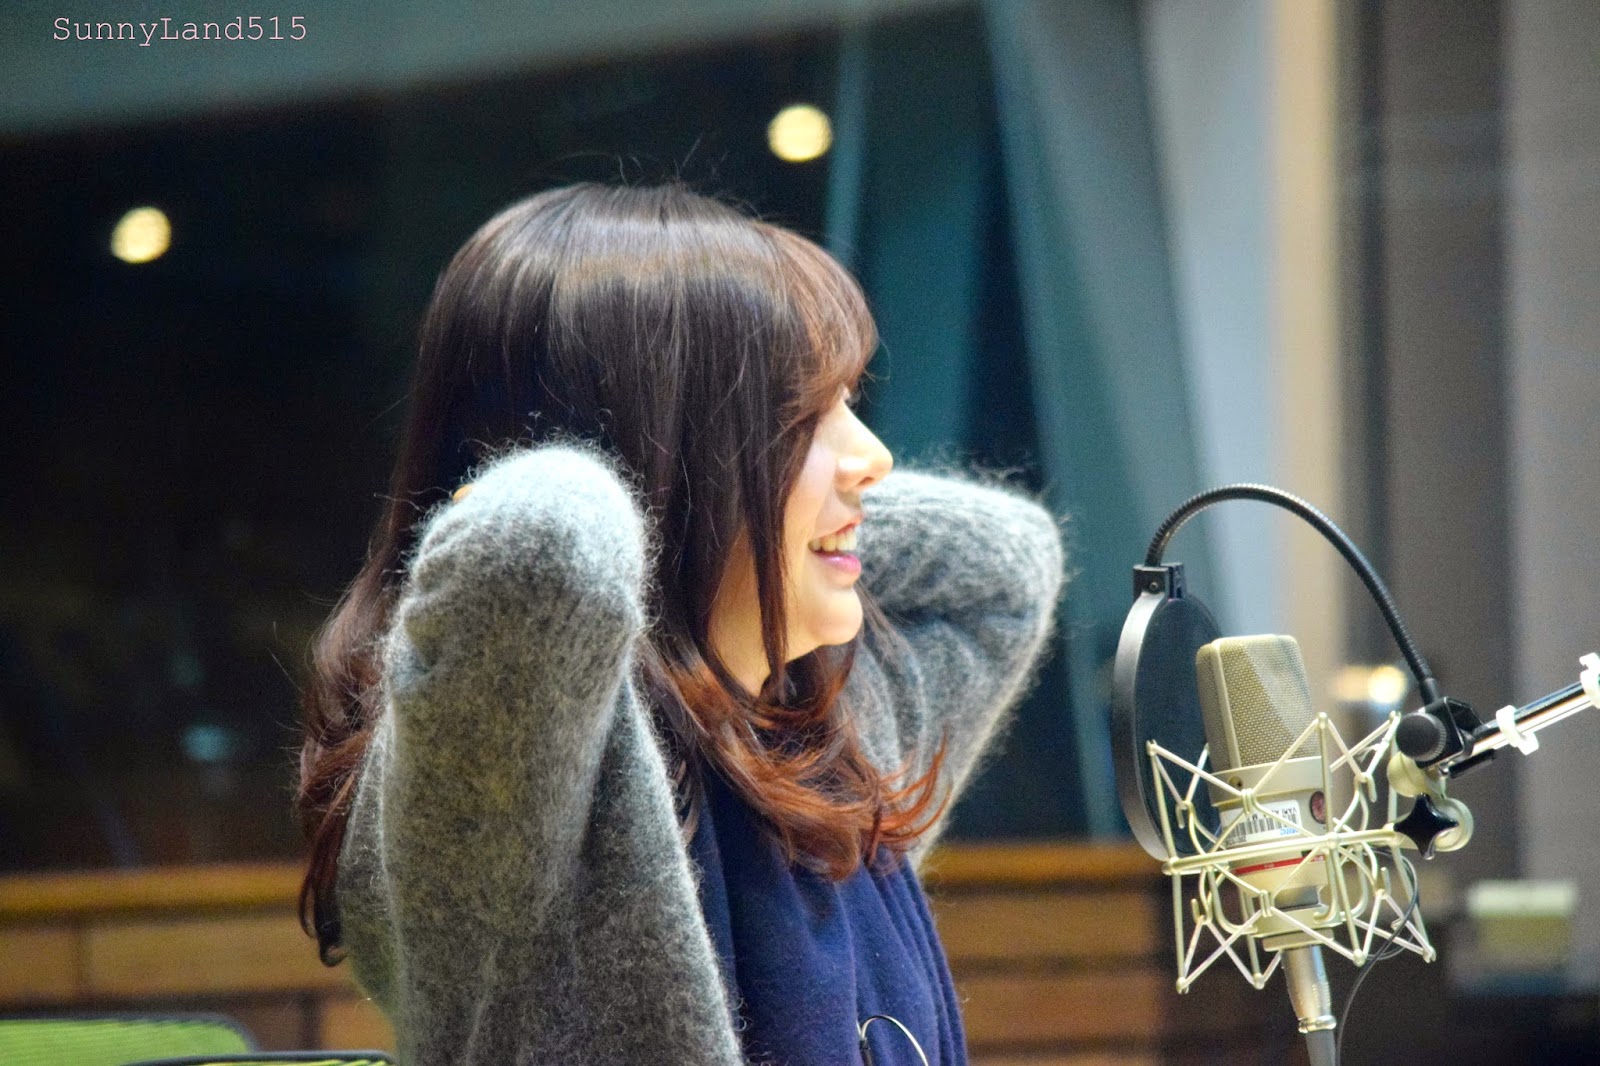 [OTHER][06-02-2015]Hình ảnh mới nhất từ DJ Sunny tại Radio MBC FM4U - "FM Date" - Page 10 DSC_0327_Fotor